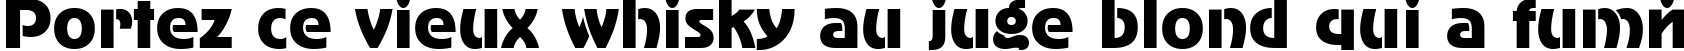 Пример написания шрифтом AdverGothicCTT текста на французском